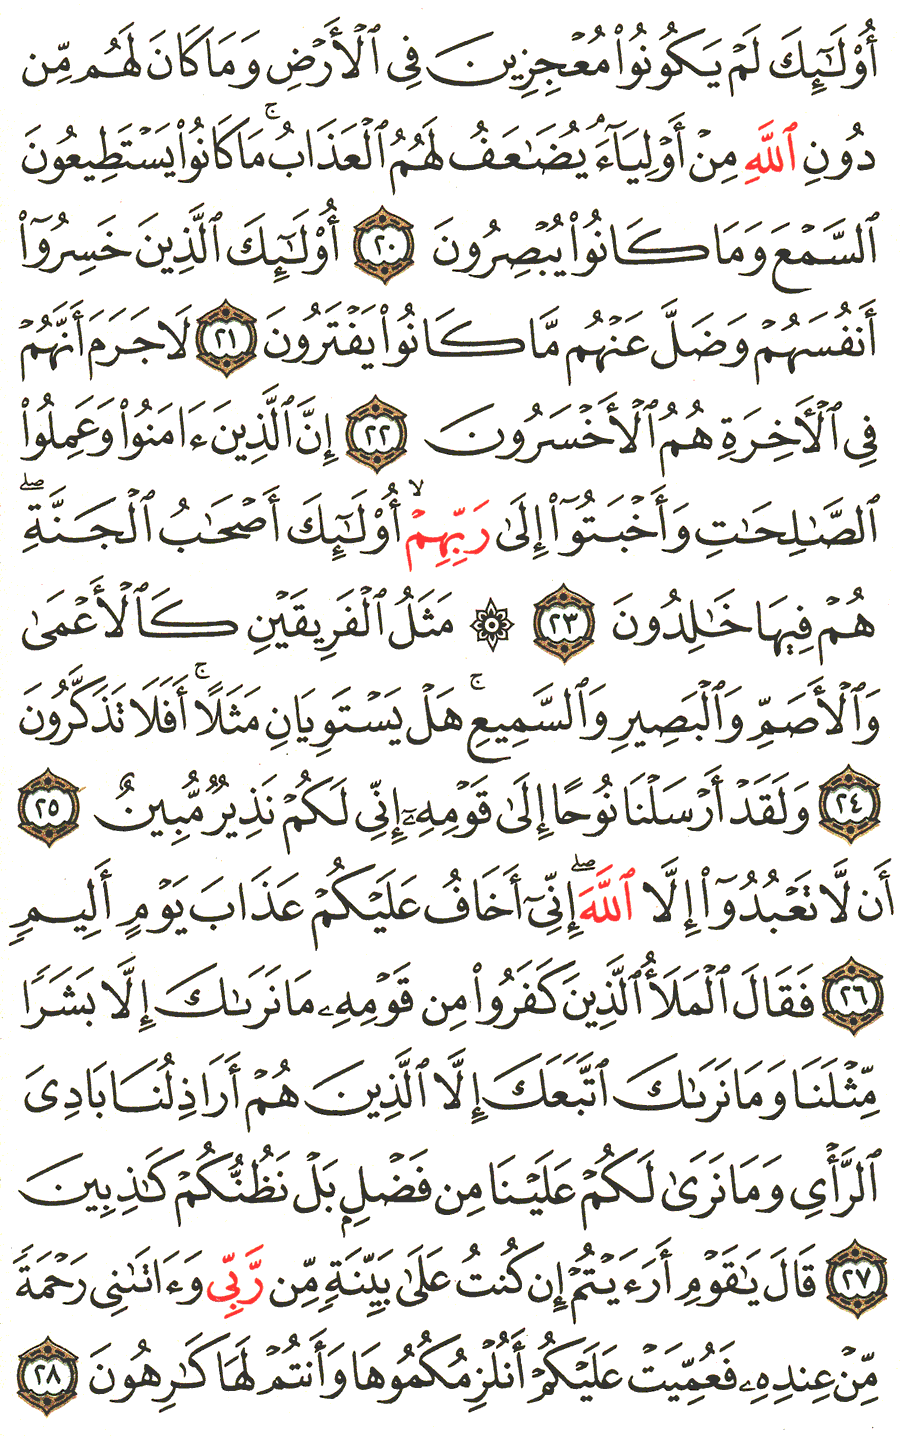 الصفحة 224 من القرآن الكريم